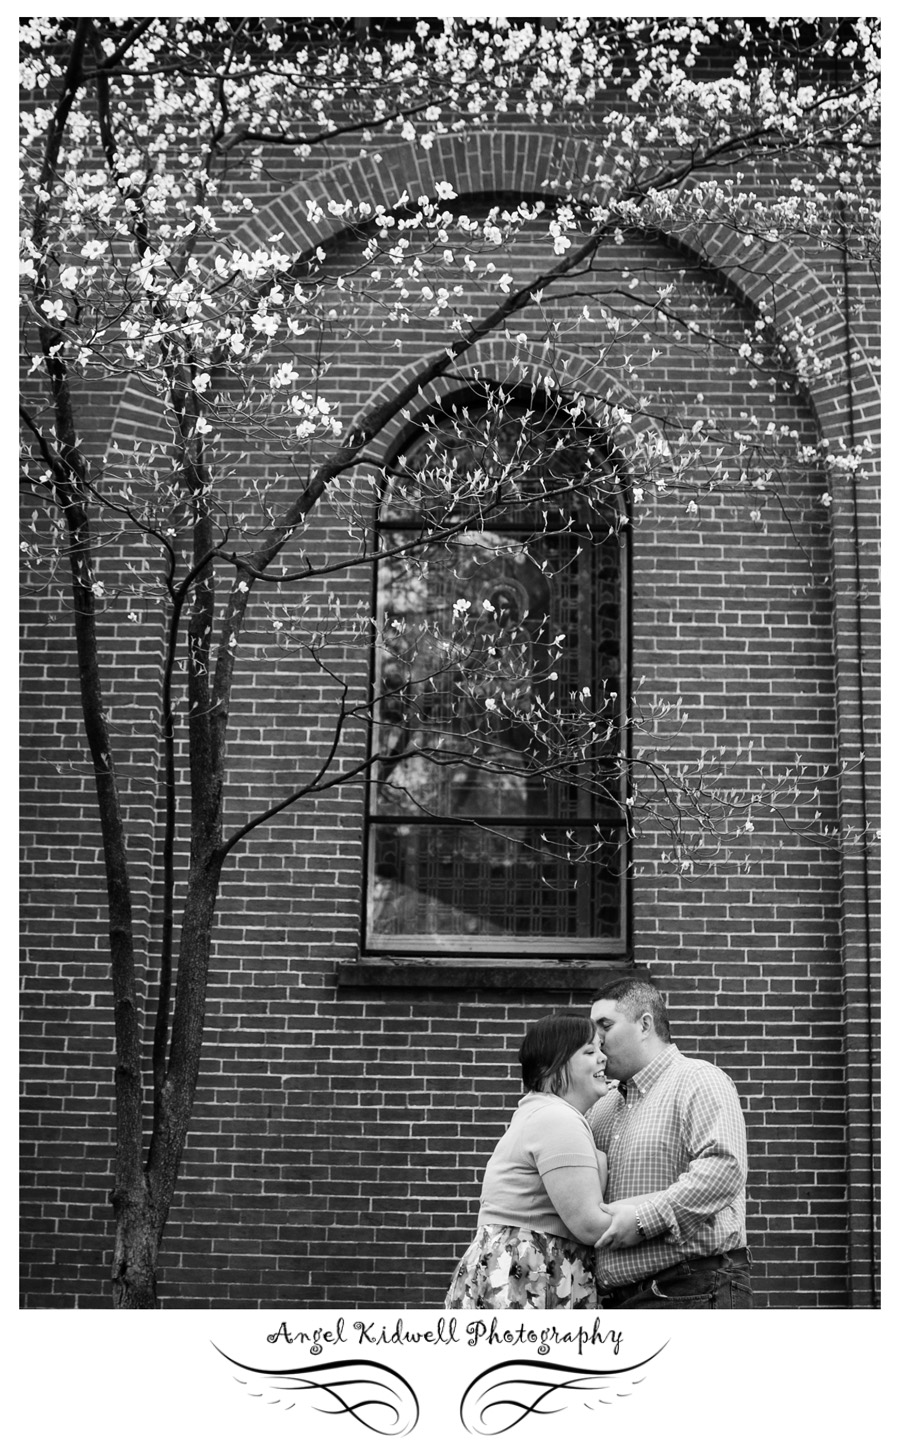 Downtown Annapolis, St. Anne's Parish, happy couple, couple kissing under a tree